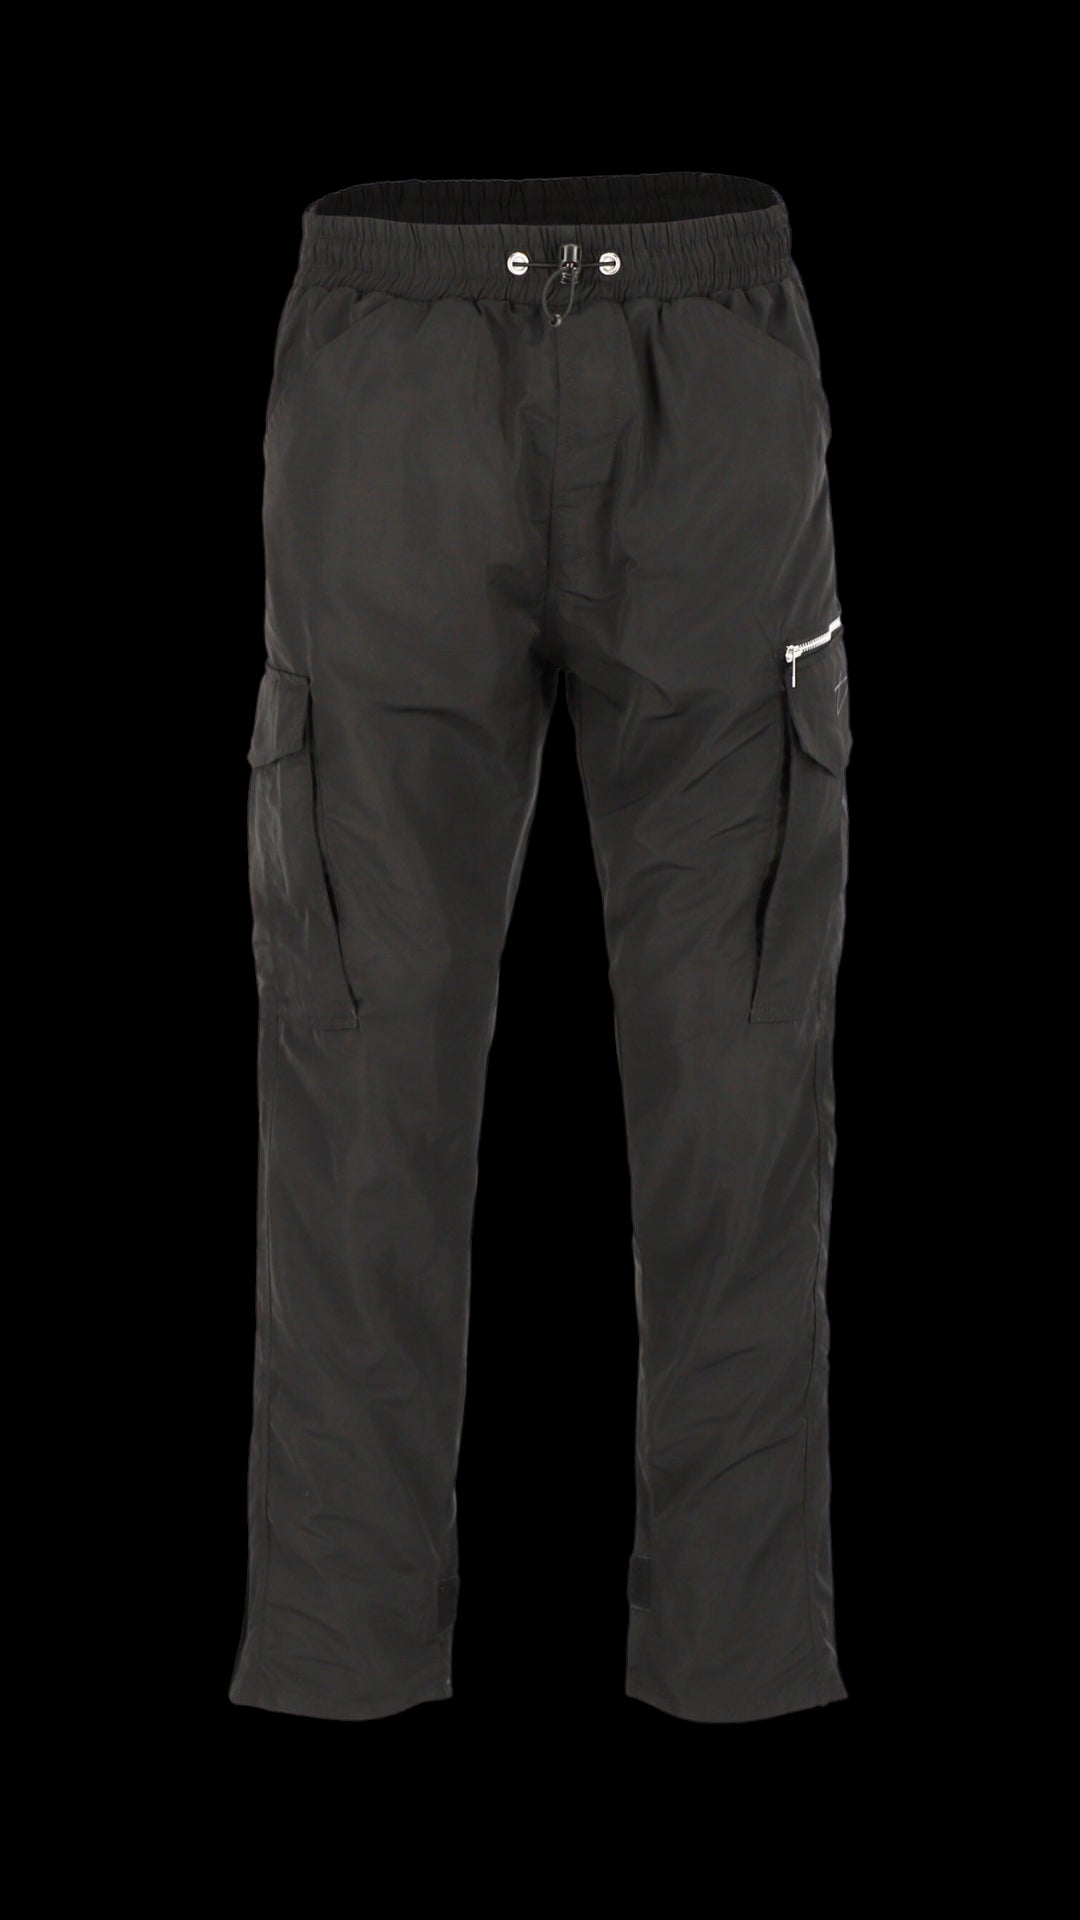 Decider Trackpants in schwarz mit Taschen und Reißverschluss vor transparentem Hintergrund